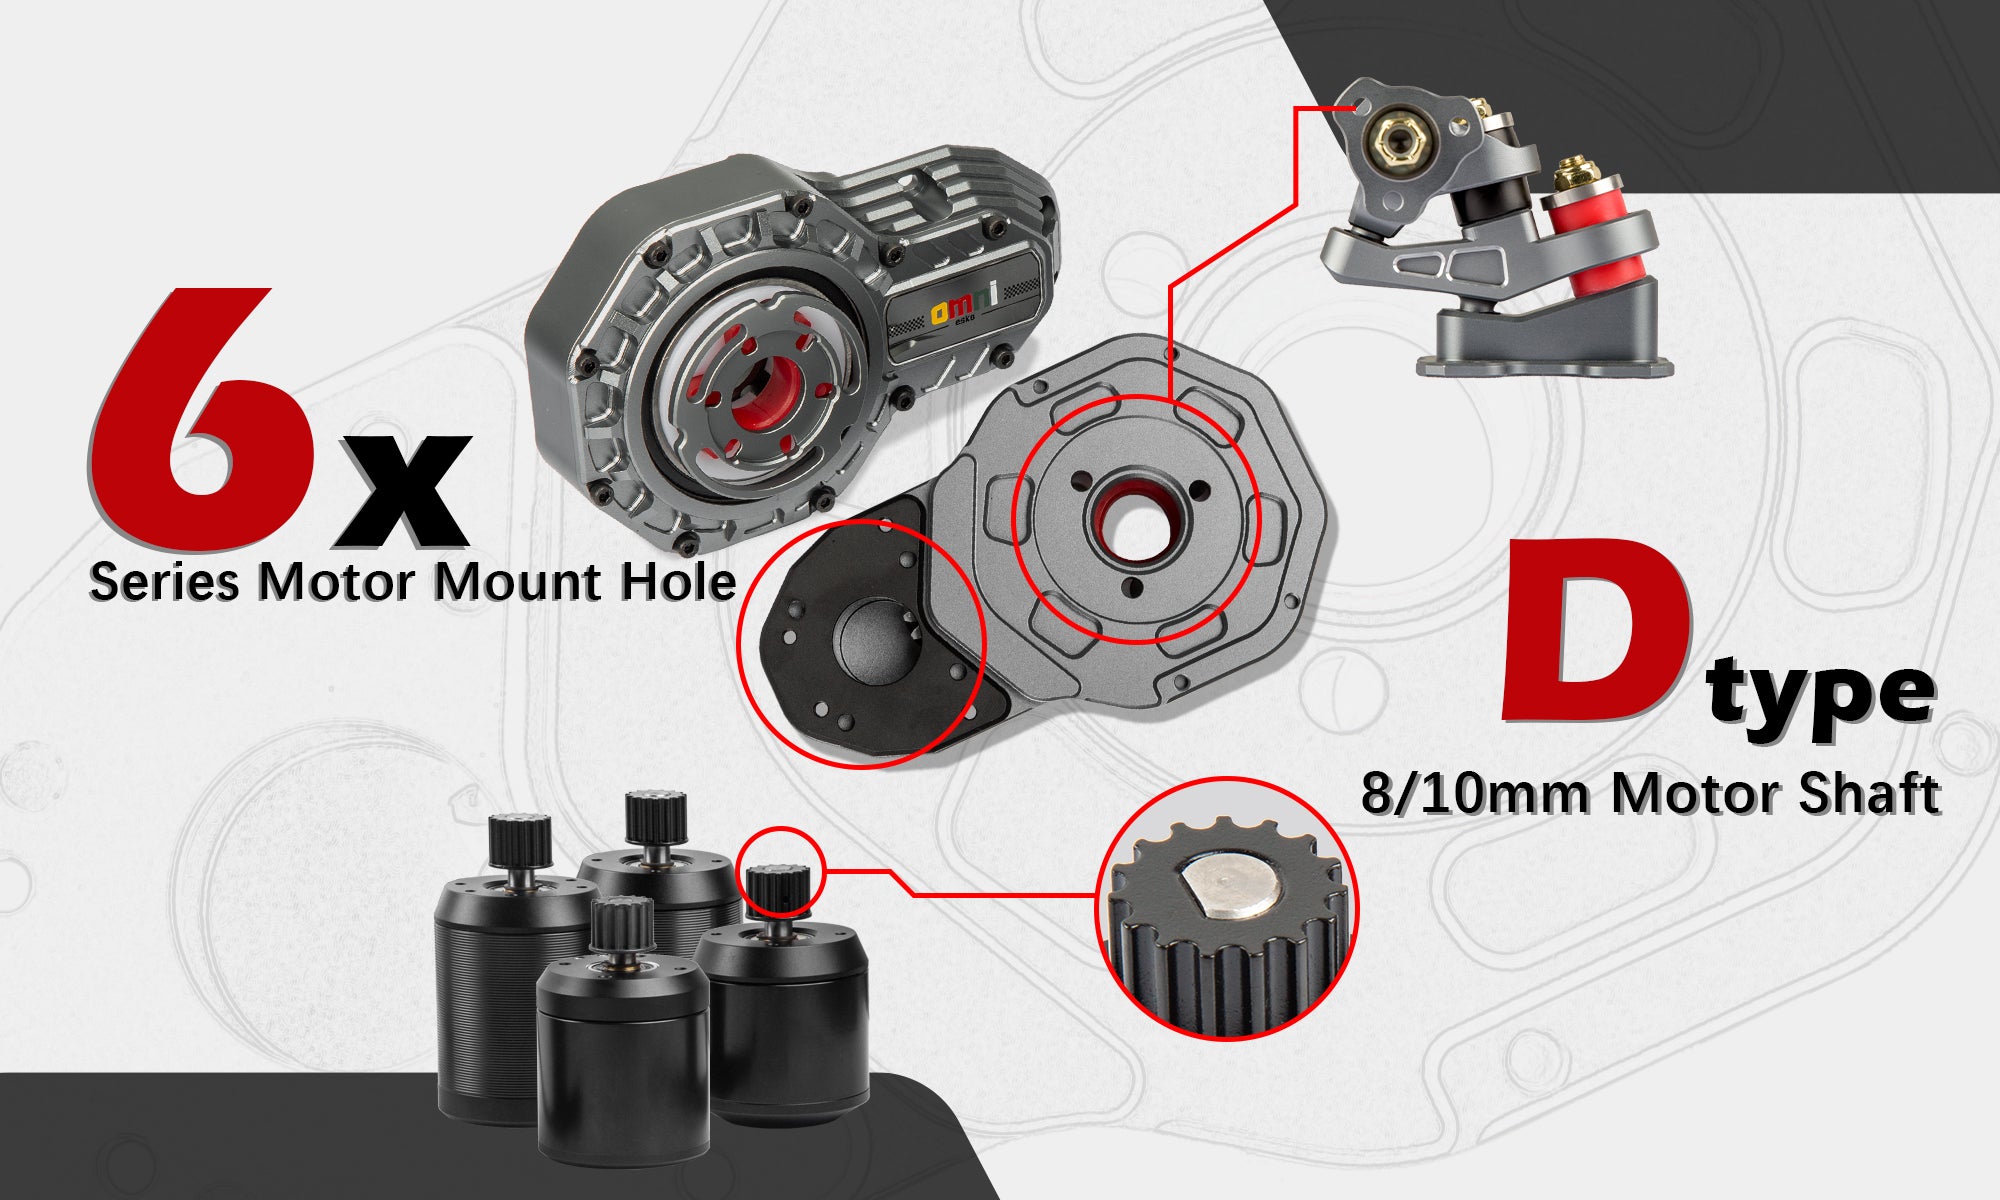 Omni Esk8 AT gear drive compatibility